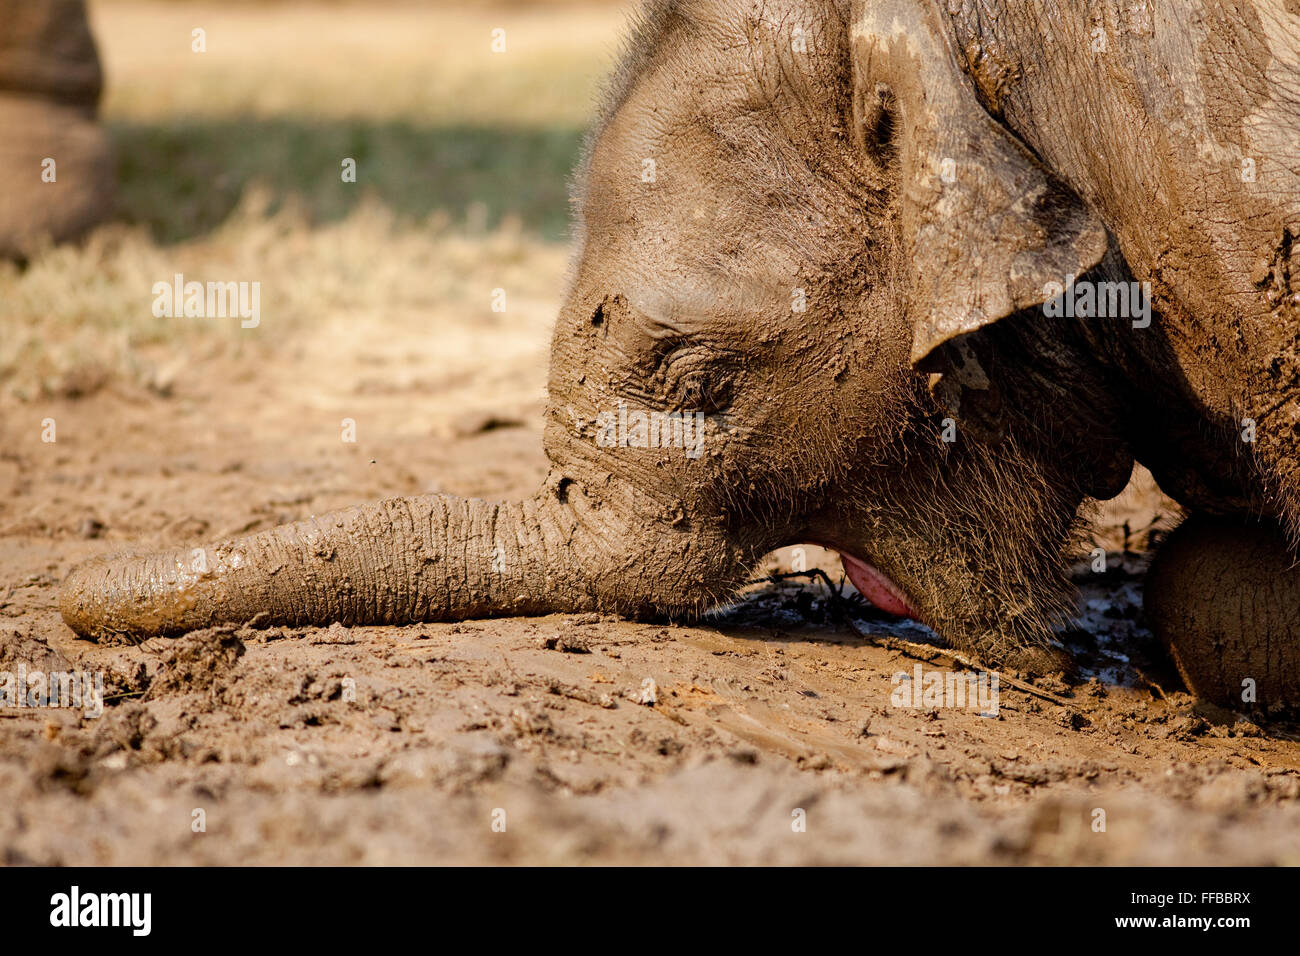 Muddy Elephant close up Stock Photo